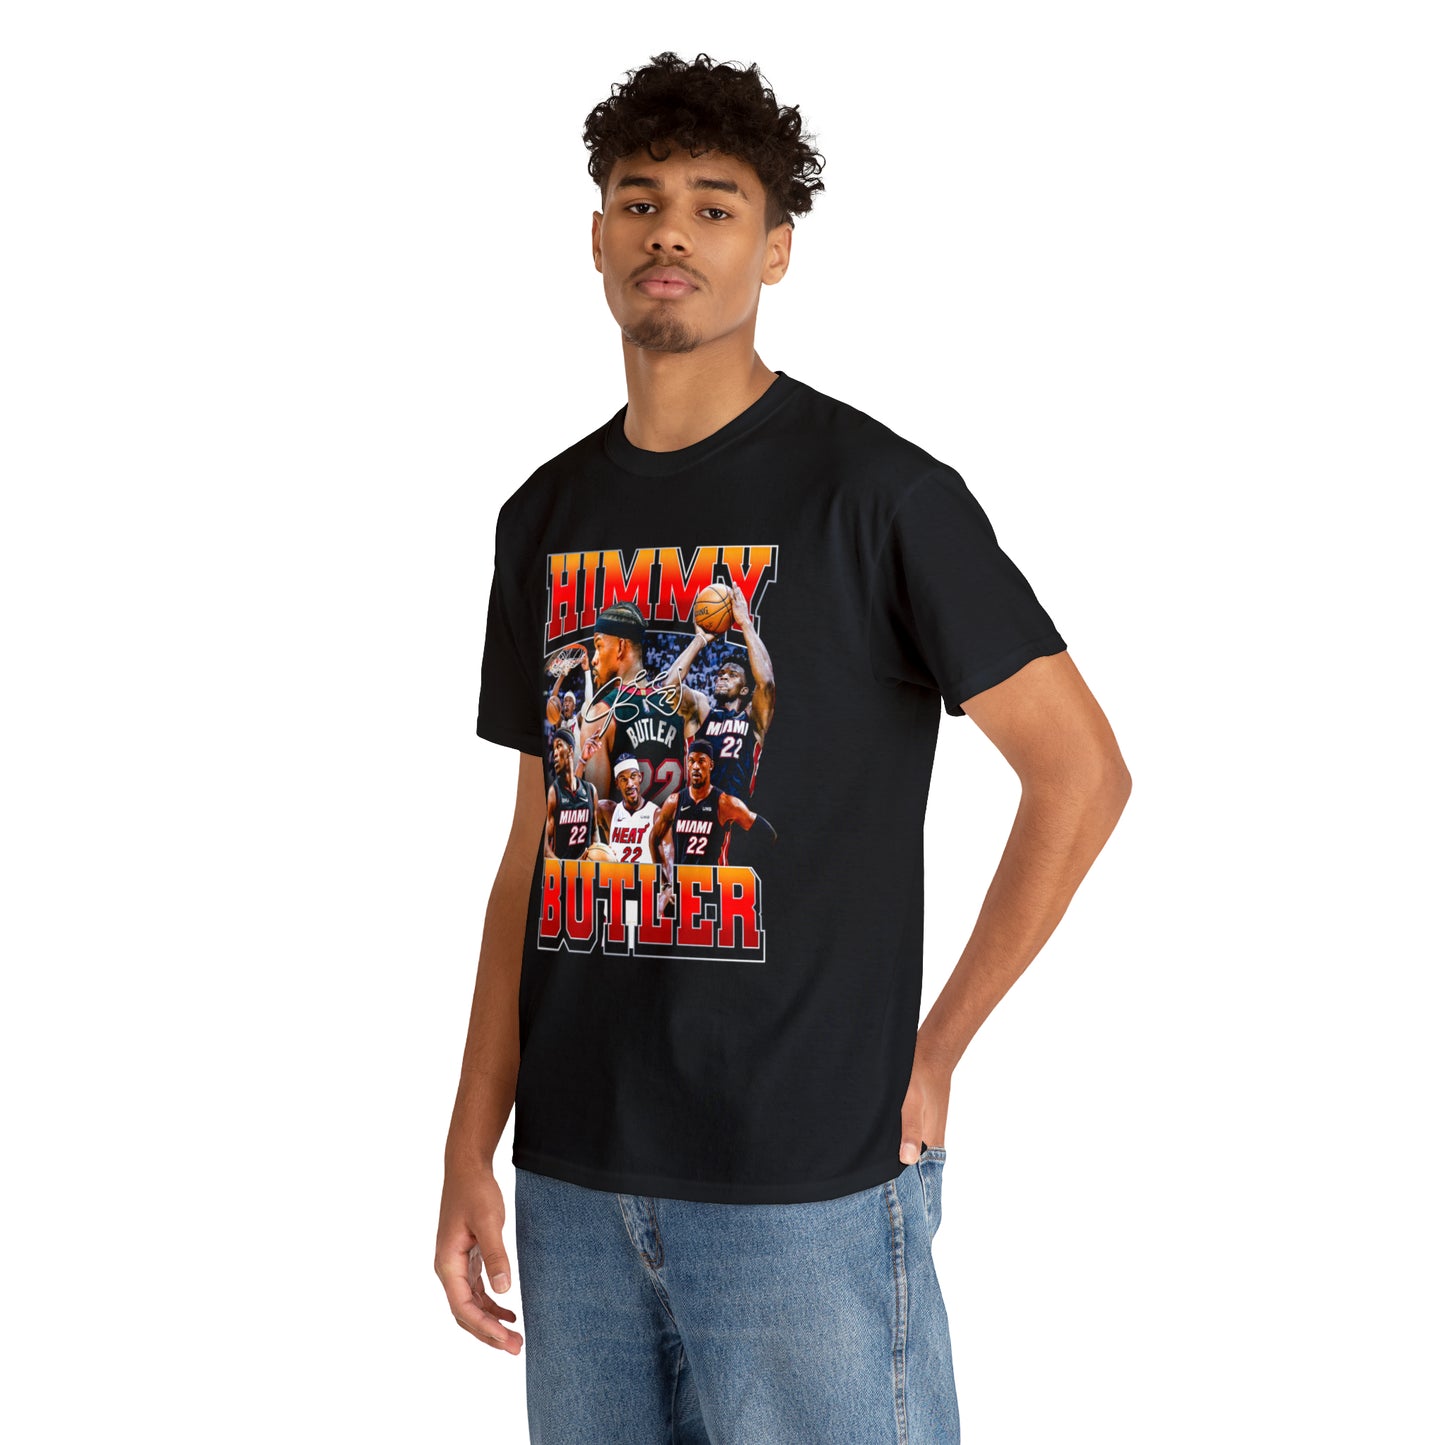 Himmy Butler T-Shirt!